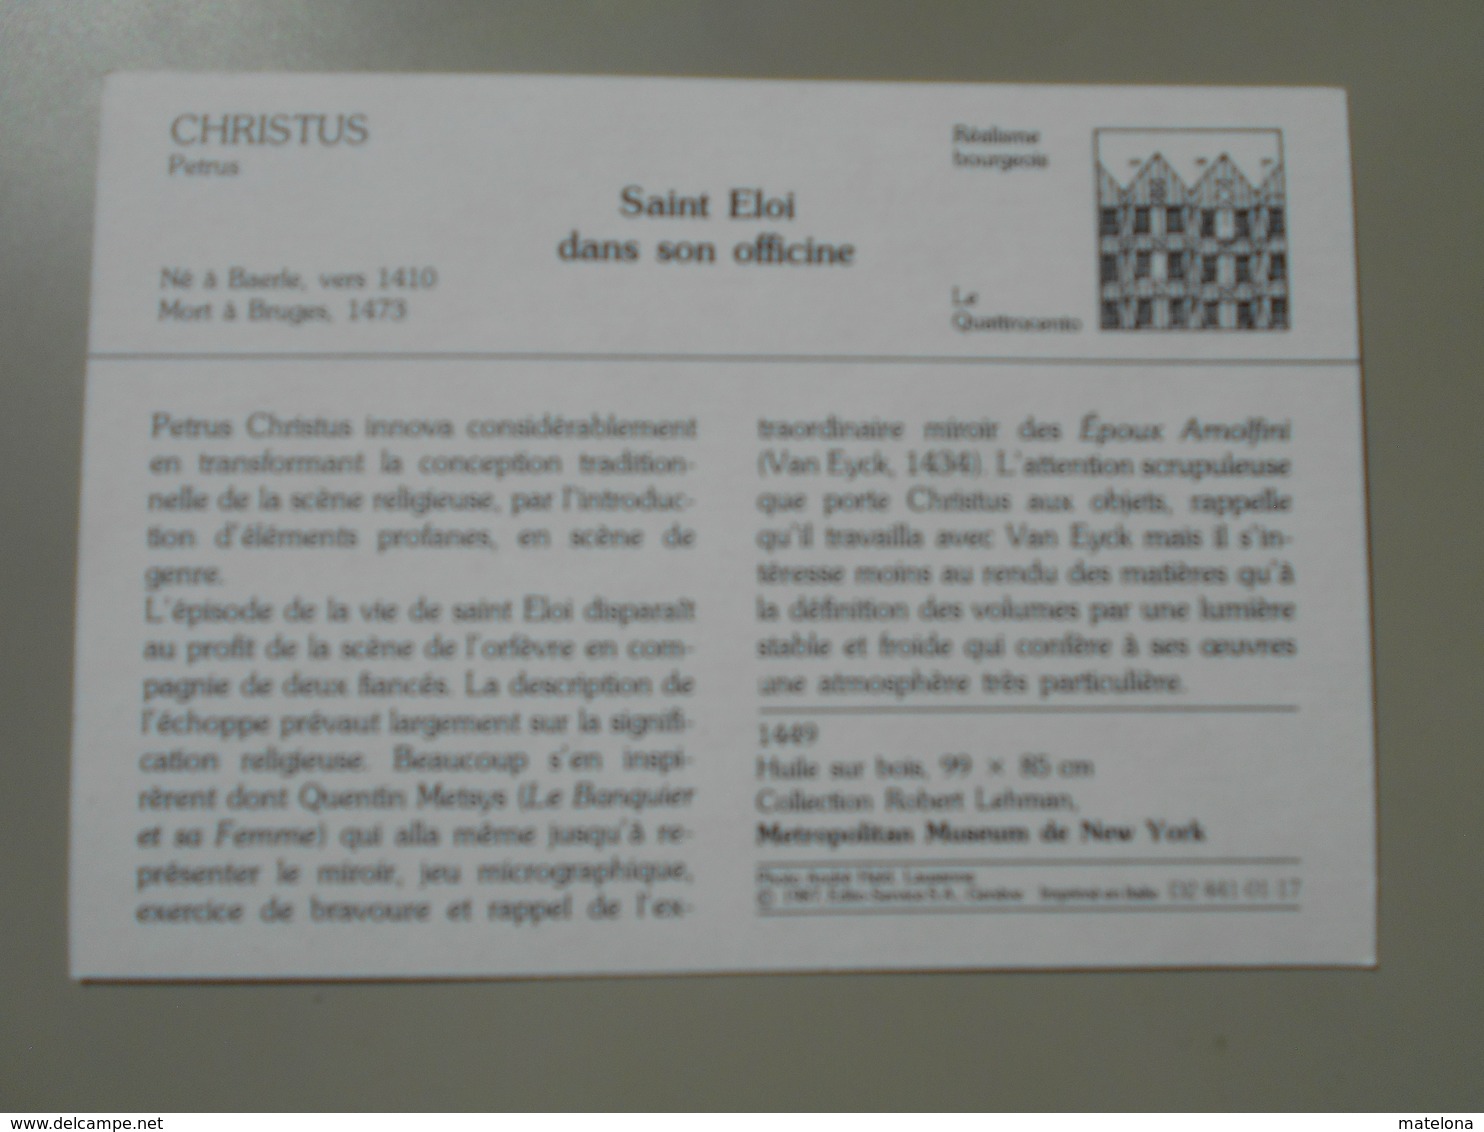 ETATS UNIS NY NEW YORK METROPOLITAN MUSEUM COLLECTION ROBERT LEHMAN CHRISTUS PETRUS SAINT ELOI DANS SON OFFICINE BAERLE - Musées